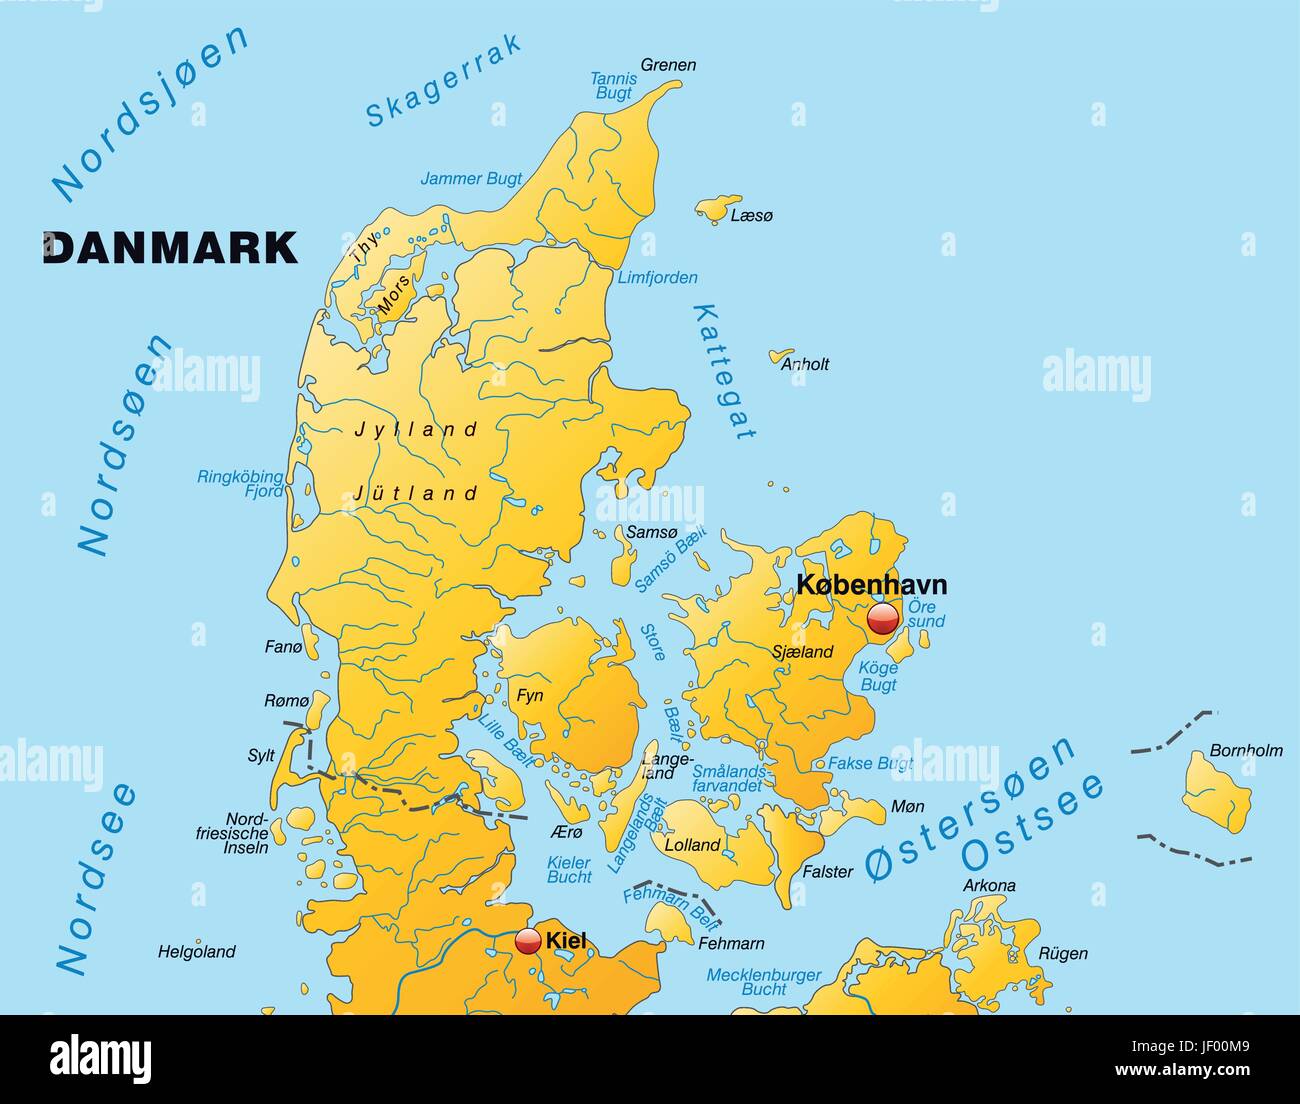 Mappa di Danimarca con la rete idrica in giallo Illustrazione Vettoriale